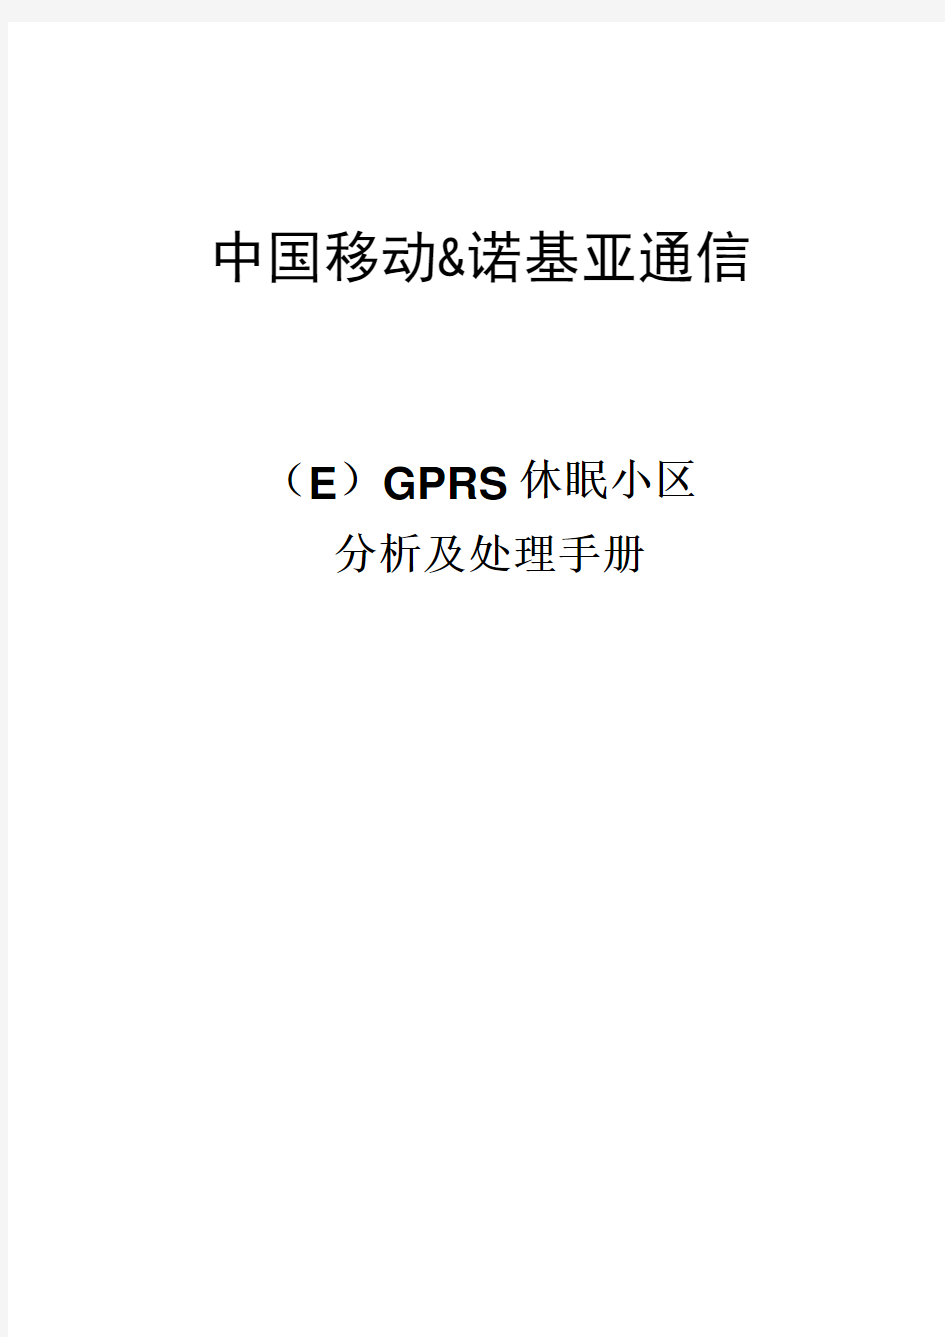 诺基亚区域(E)GPRS休眠小区分析